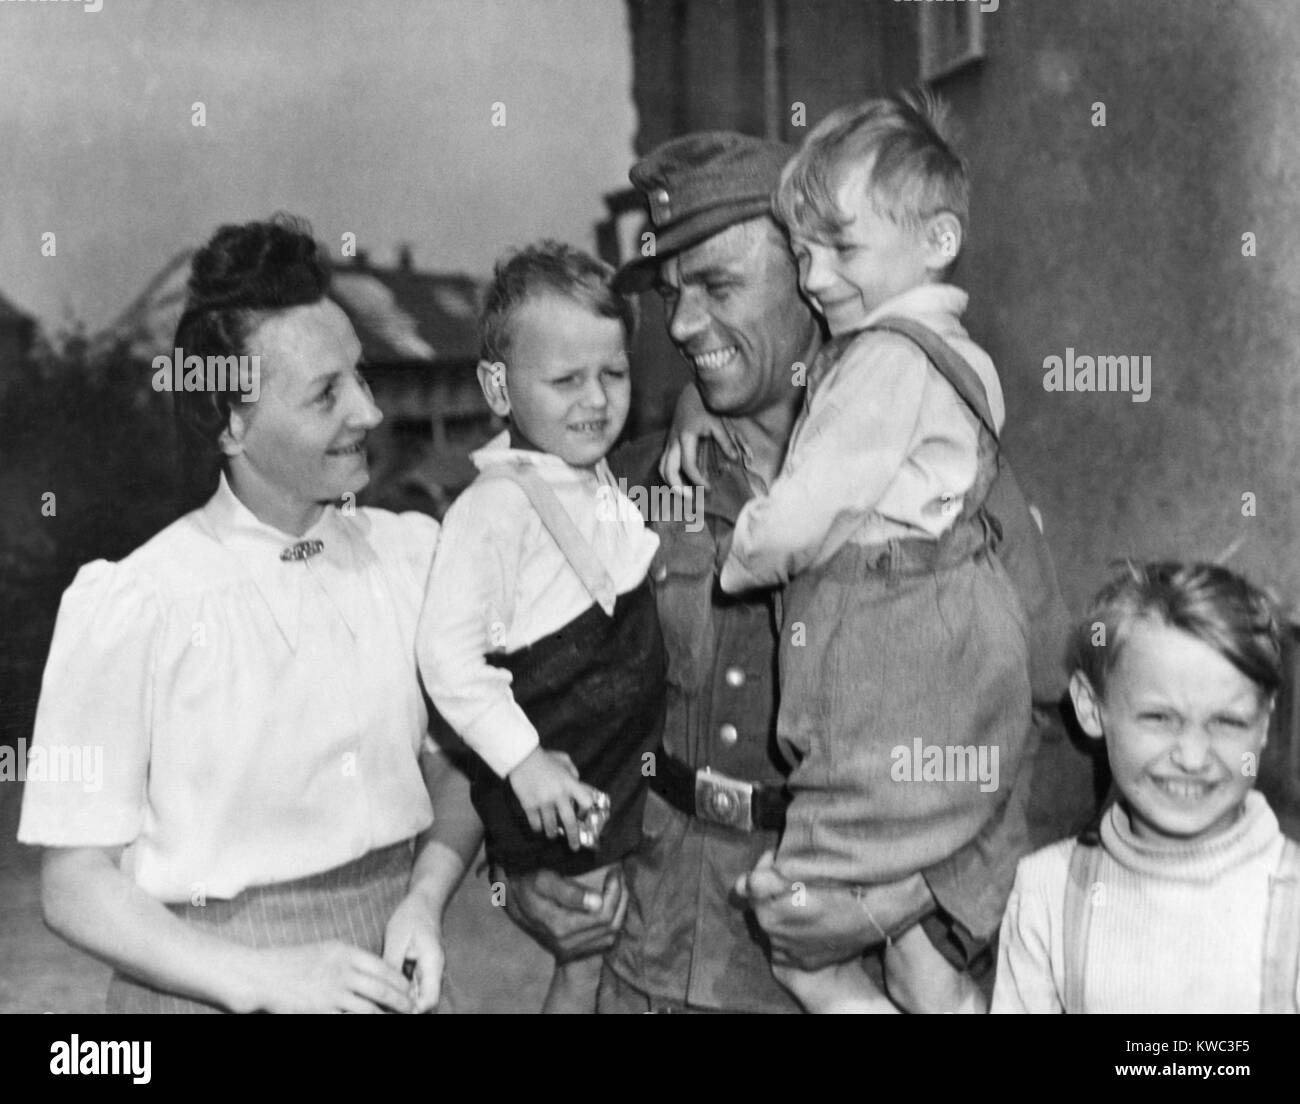 Scaricate soldato tedesco Fritz Reidel tornò a sua moglie e i suoi due figli, 21 maggio 1945. I militari USA ha iniziato a scaricare i soldati tedeschi dopo gli esami medici e le impronte digitali. Essi sono stati forniti 40 marchi, documenti di scarico e trasporto alle loro case. Reidel, è stato il primo prigioniero di guerra per essere rilasciato dal POW Camp a Plauen, Germania. Guerra Mondiale 2 (BSLOC 2015 13 78) Foto Stock